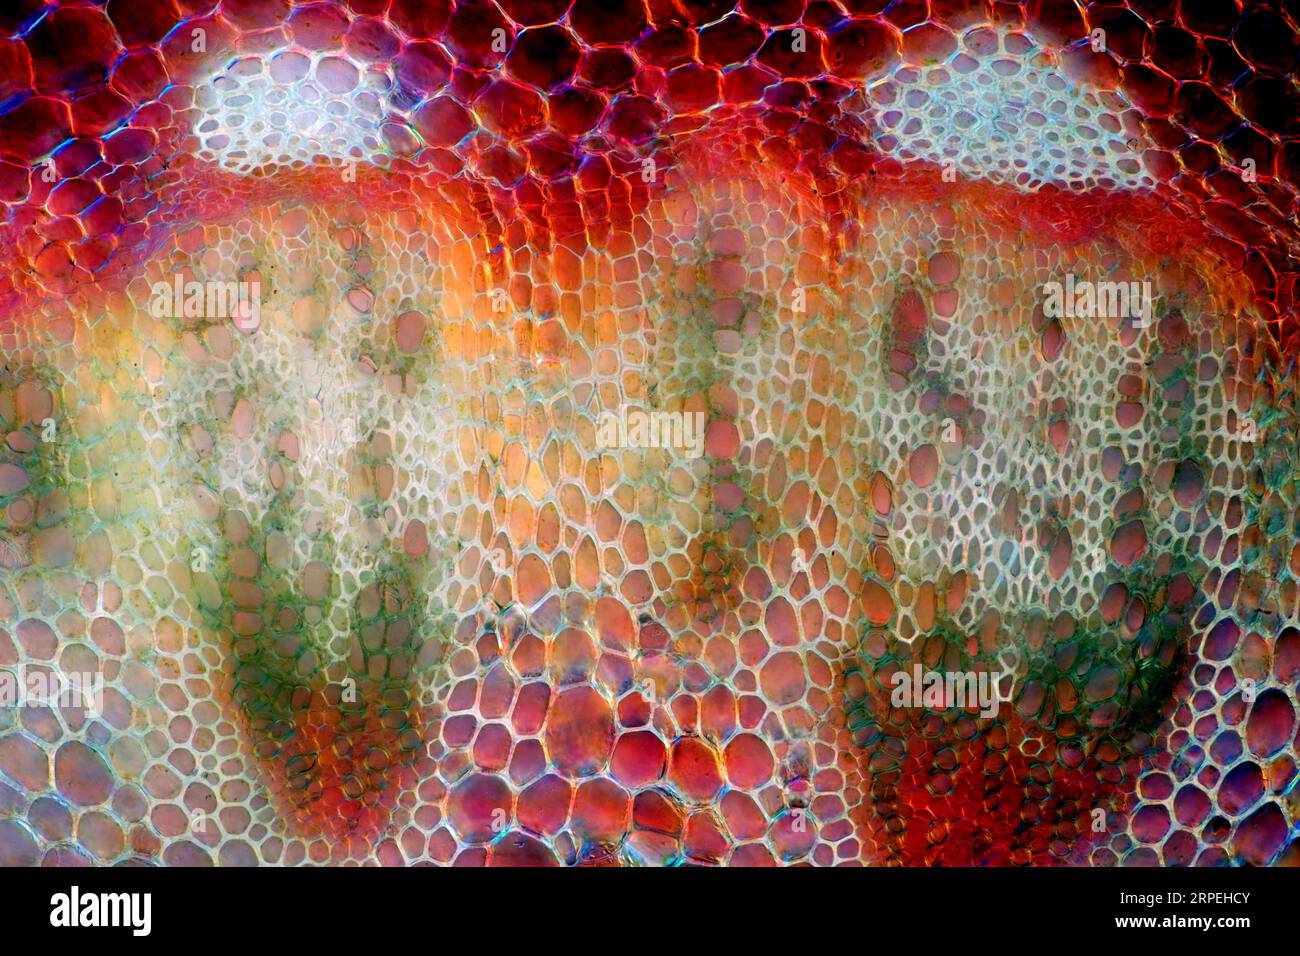 Das Bild zeigt Gefäßbündel im senecio-Stiel, die durch das Mikroskop in polarisiertem Licht mit einer Vergrößerung von 200X aufgenommen wurden Stockfoto